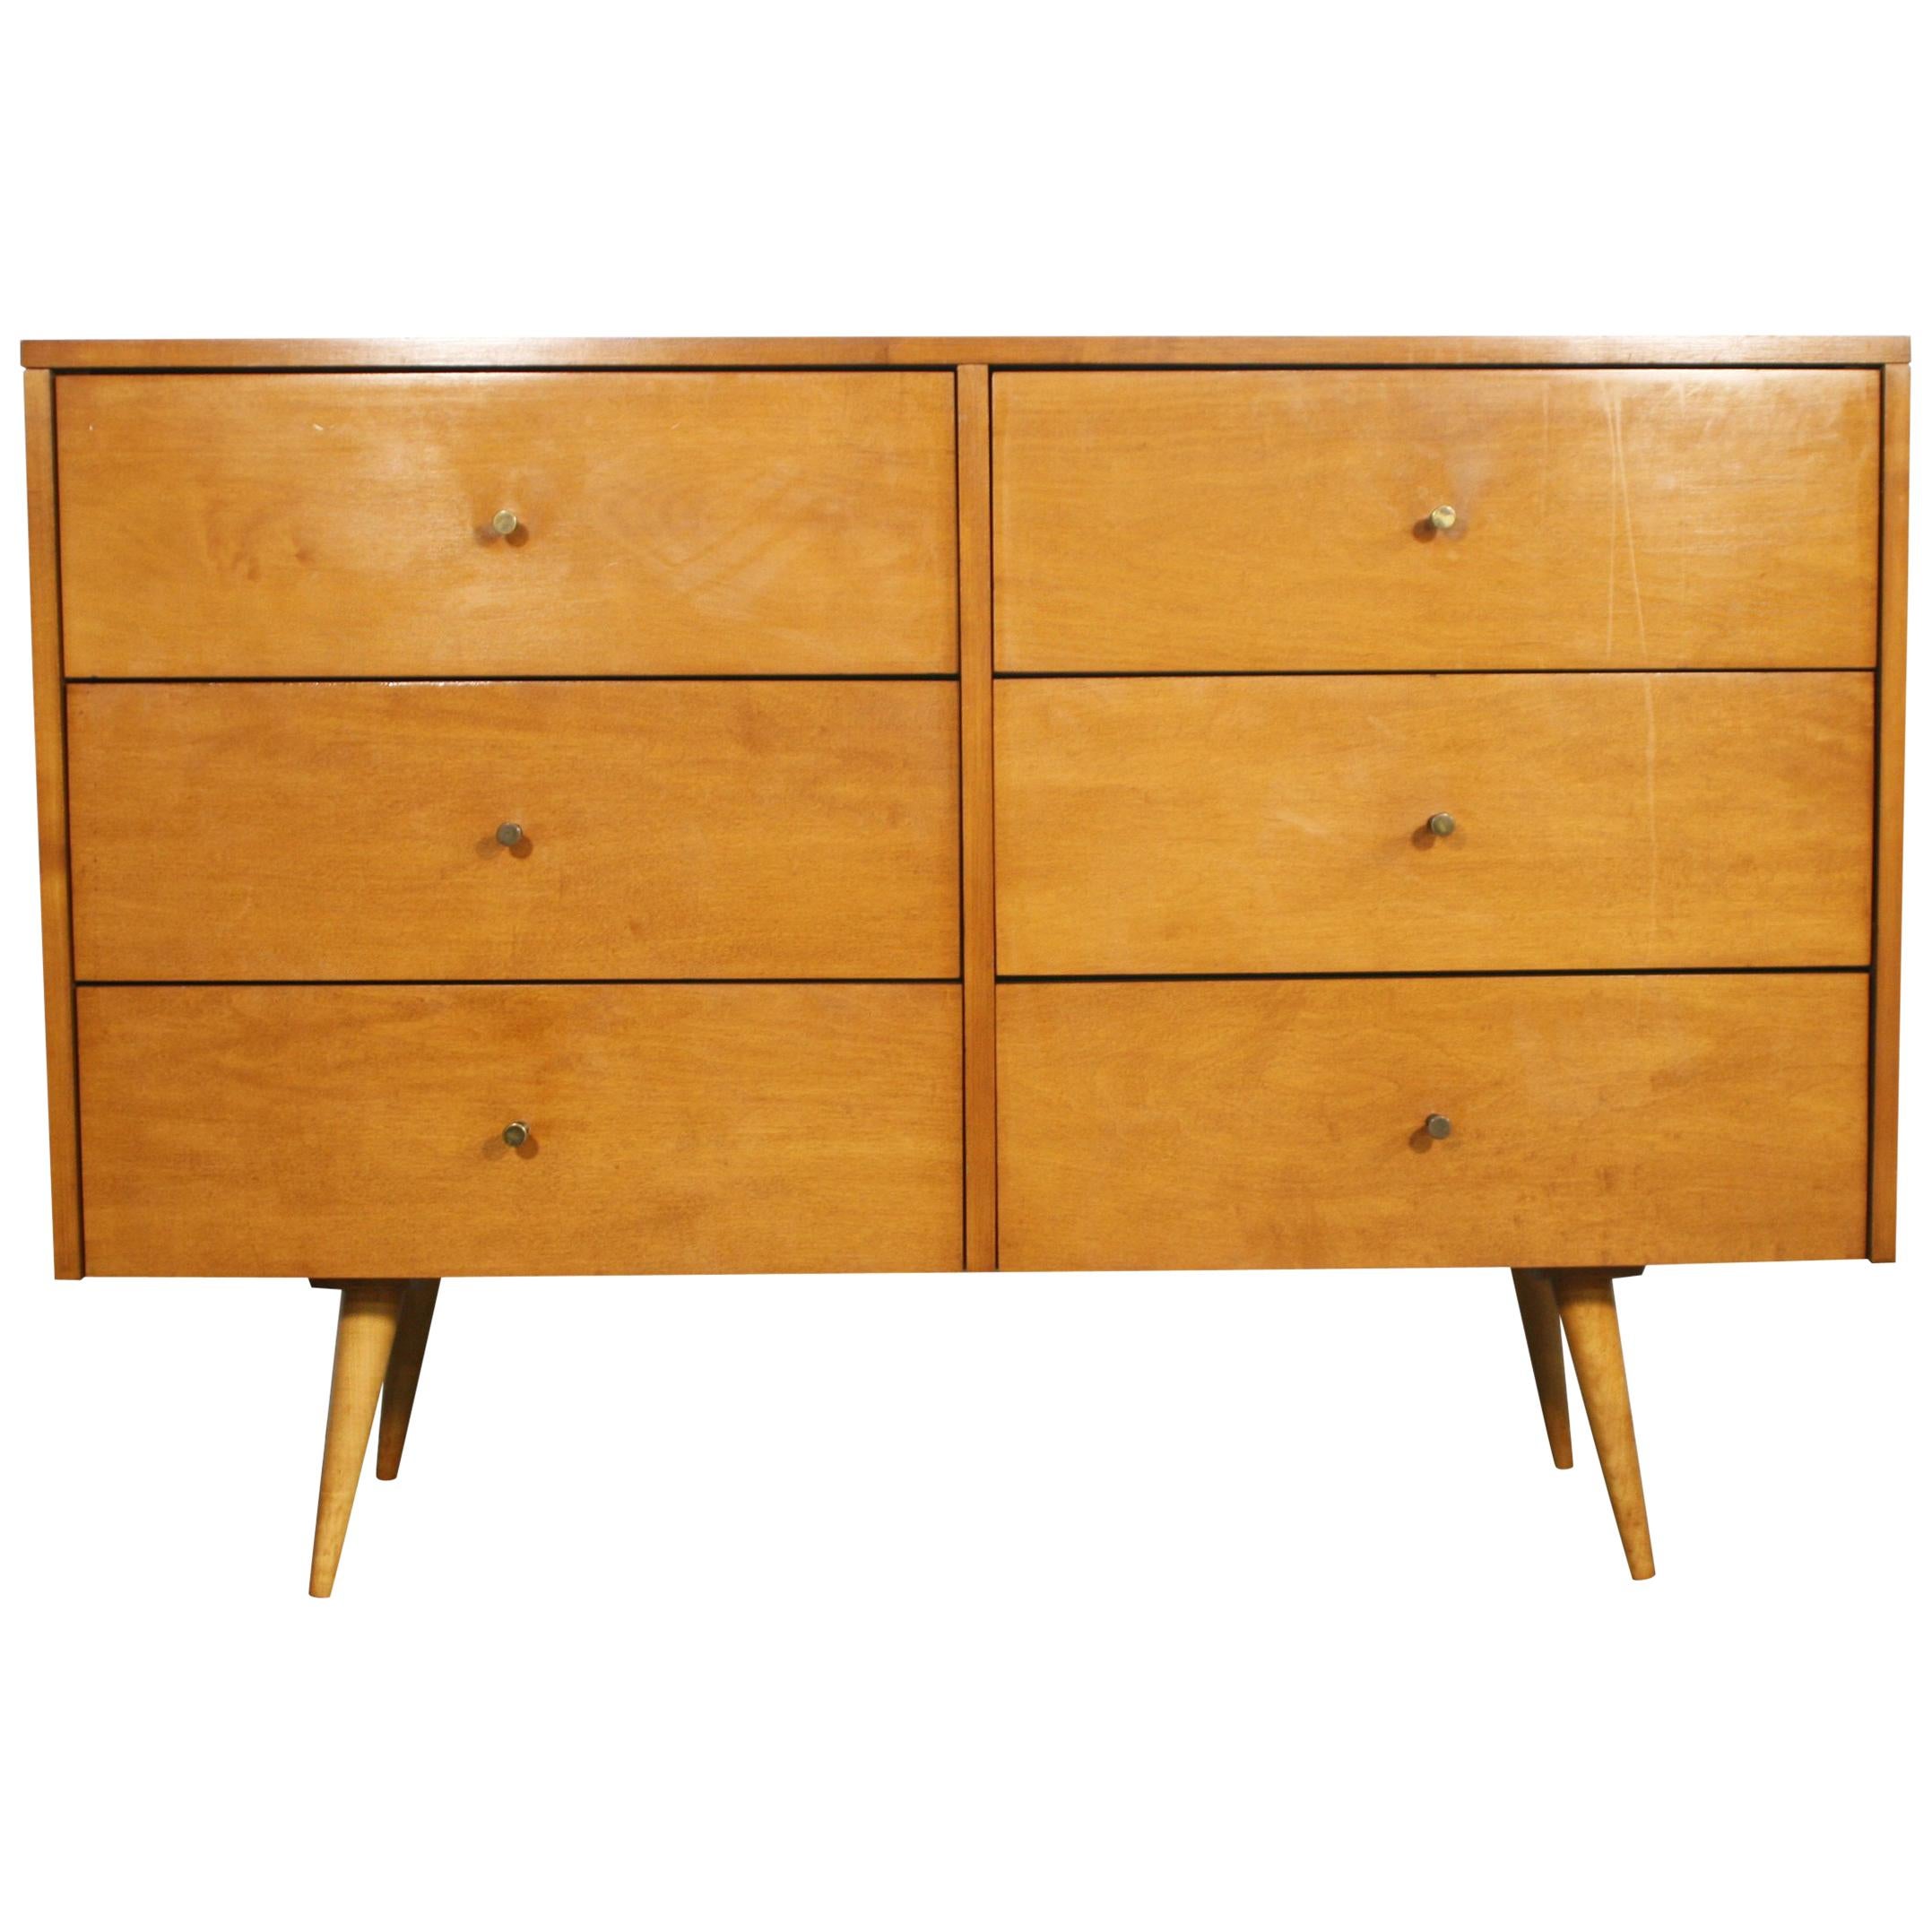 Midcentury Paul McCobb Six-Drawer Dresser Credenza #1509 Blonde Maple Brass